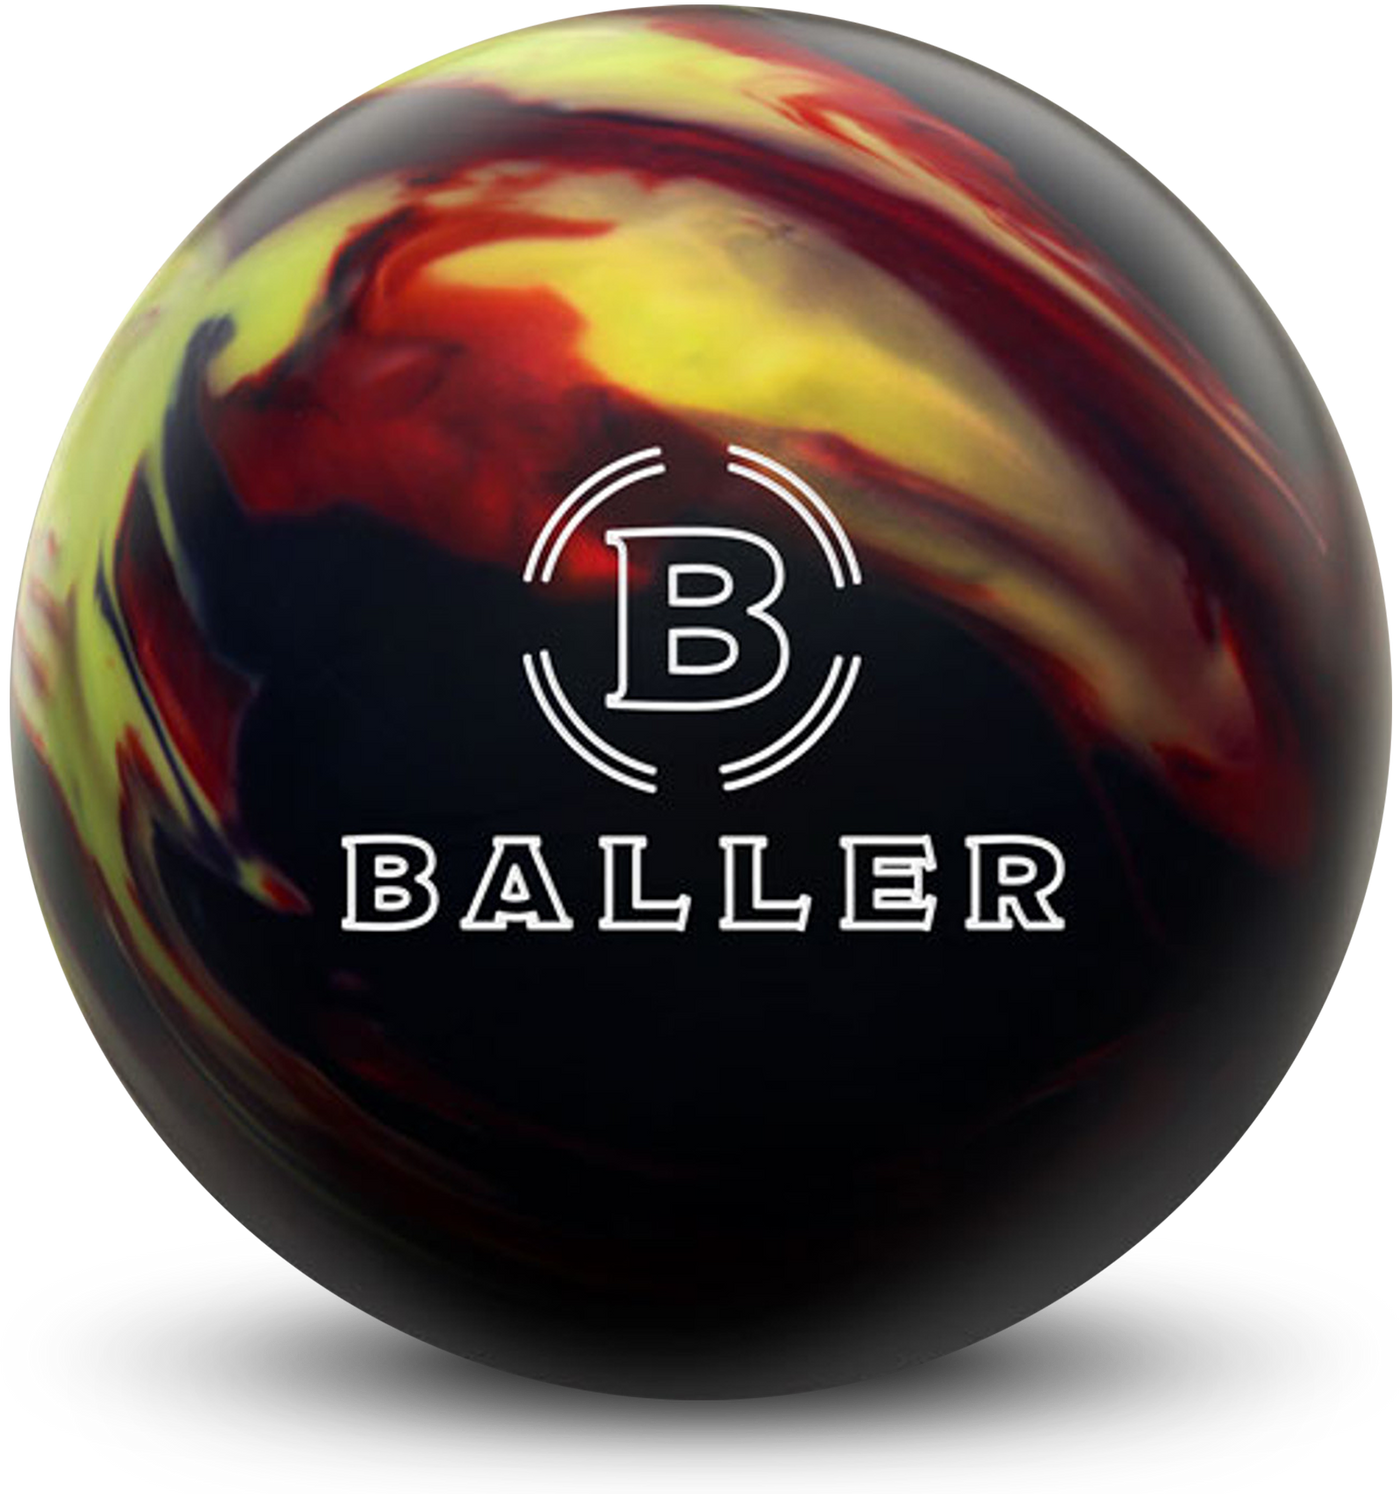 Baller Bowling Ball